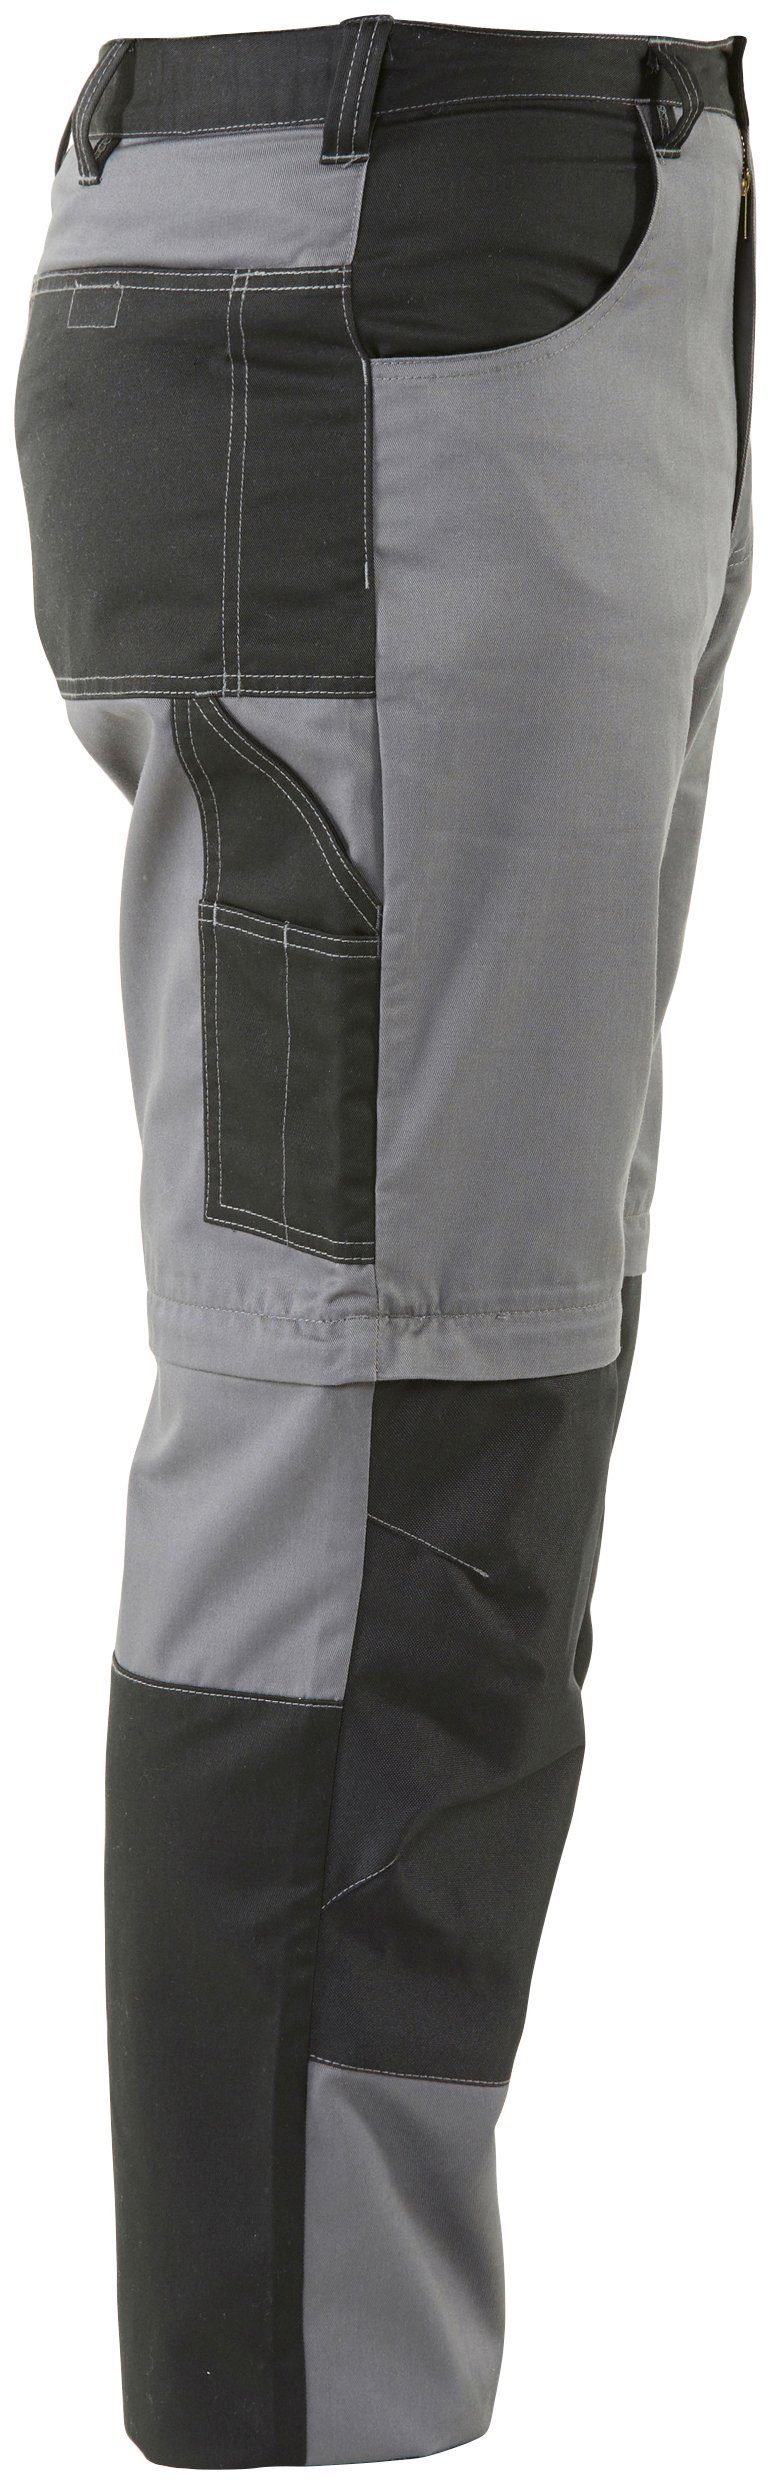 Funktion: einem Country Northern Beinverlängerung Worker 8 Shorts lange Zipp-off in Arbeitshose (verstärkter mit möglich, Arbeitshose und Kniebereich, Taschen)